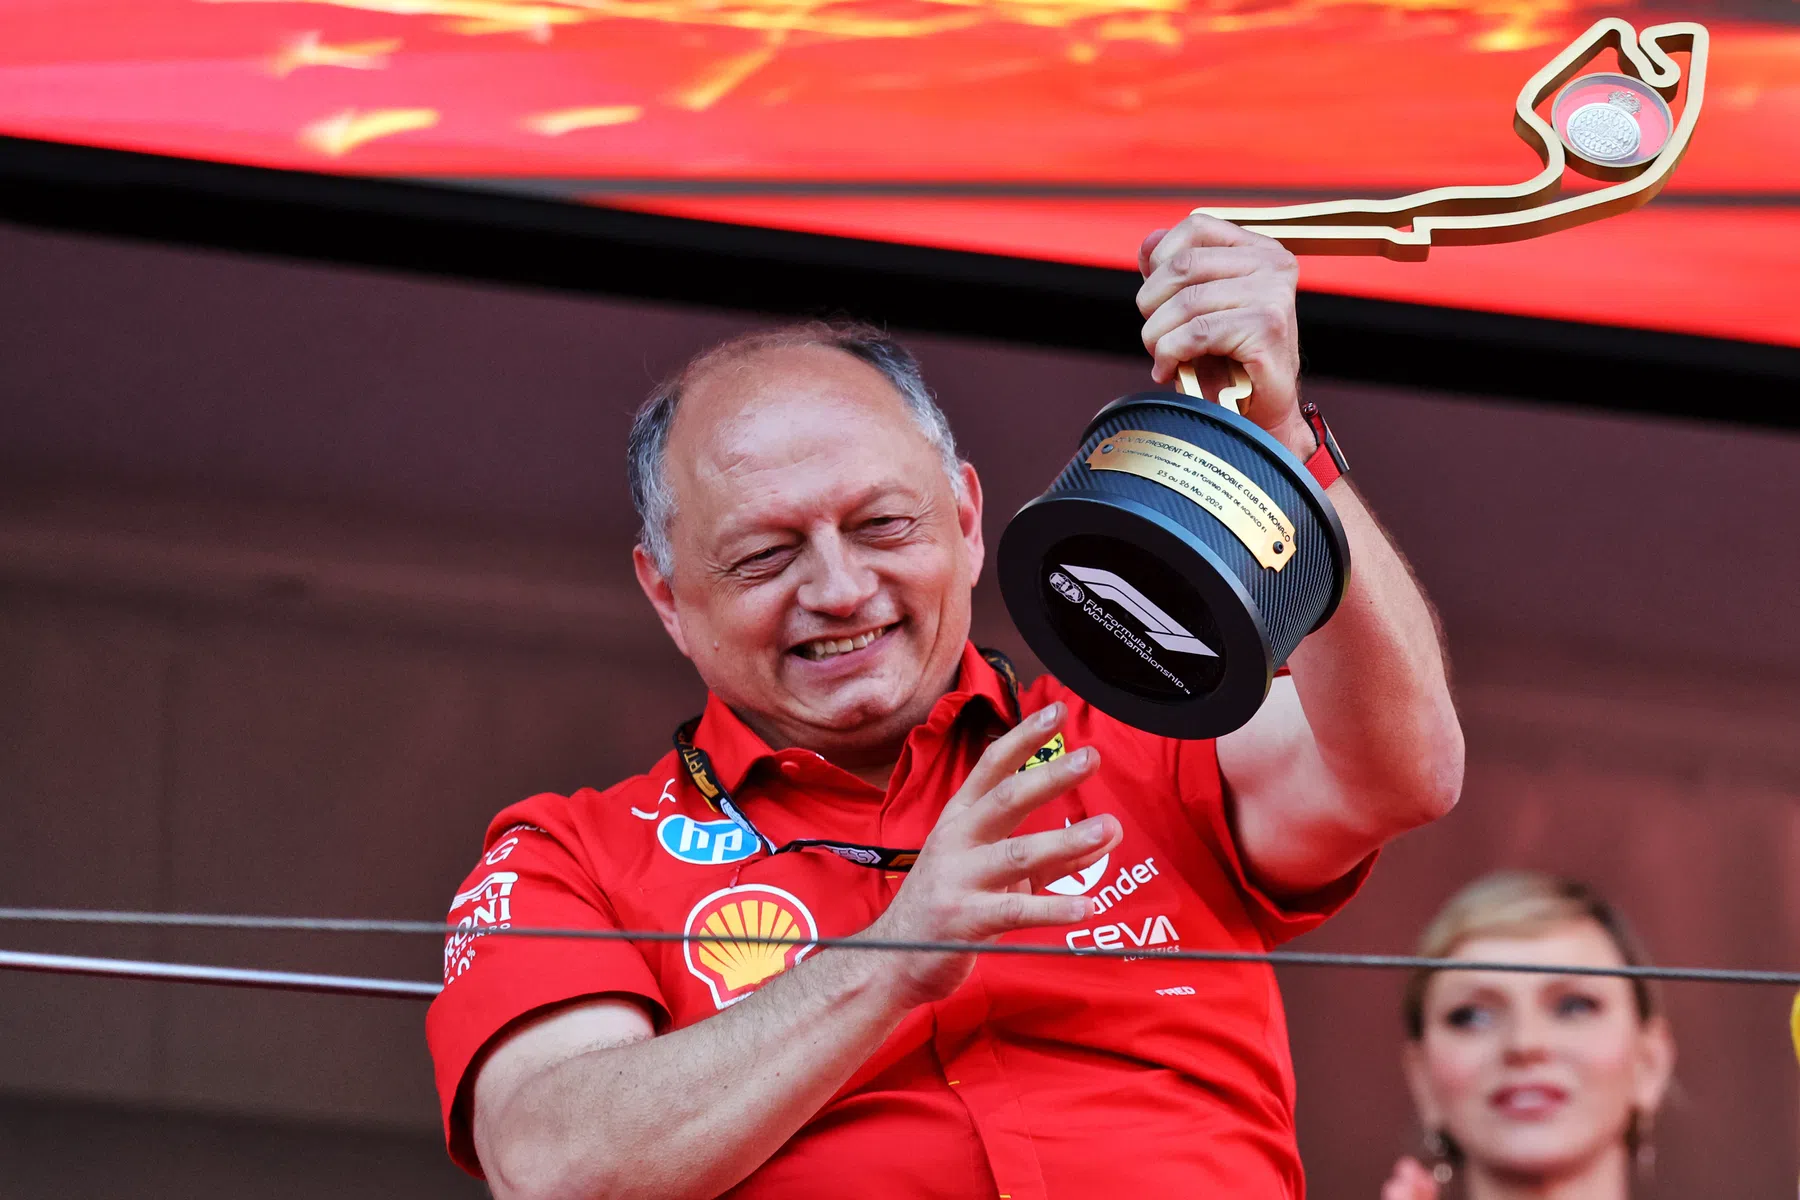 Bernie Collins racconta come Vasseur abbia portato più fiducia in Ferrari